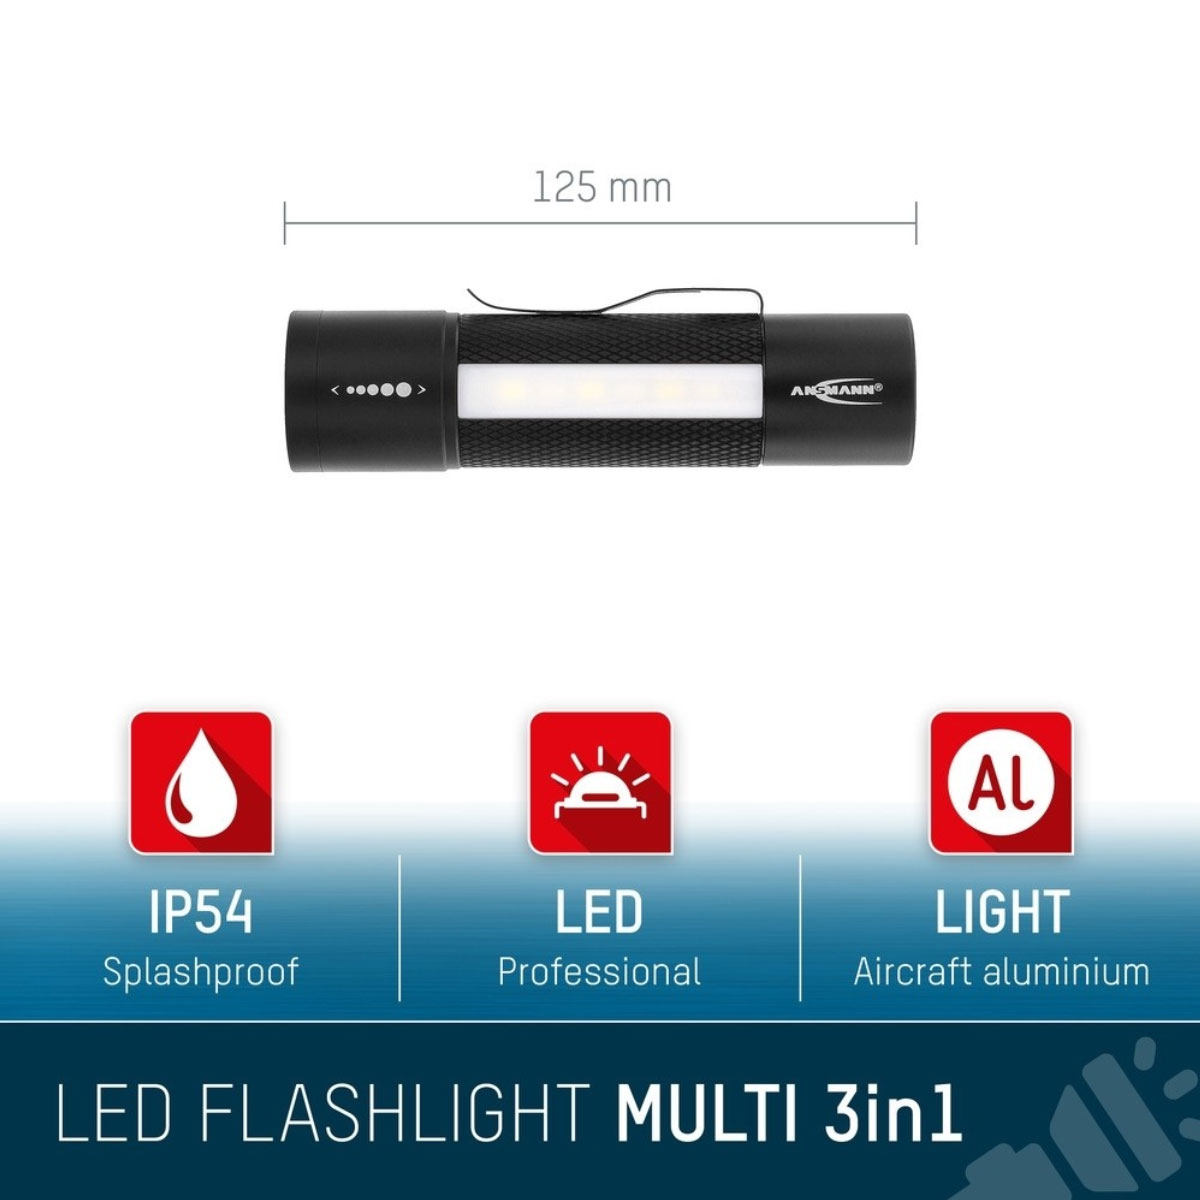 Professionelle Multifunktionsleuchte, die fokussierbare LED-Taschenlampe, Arbeitsleuchte und Signalleuchte, inkl. 3 Micro AAA Batterien, abnehmbarem Gürtelclip & Haltemagnet